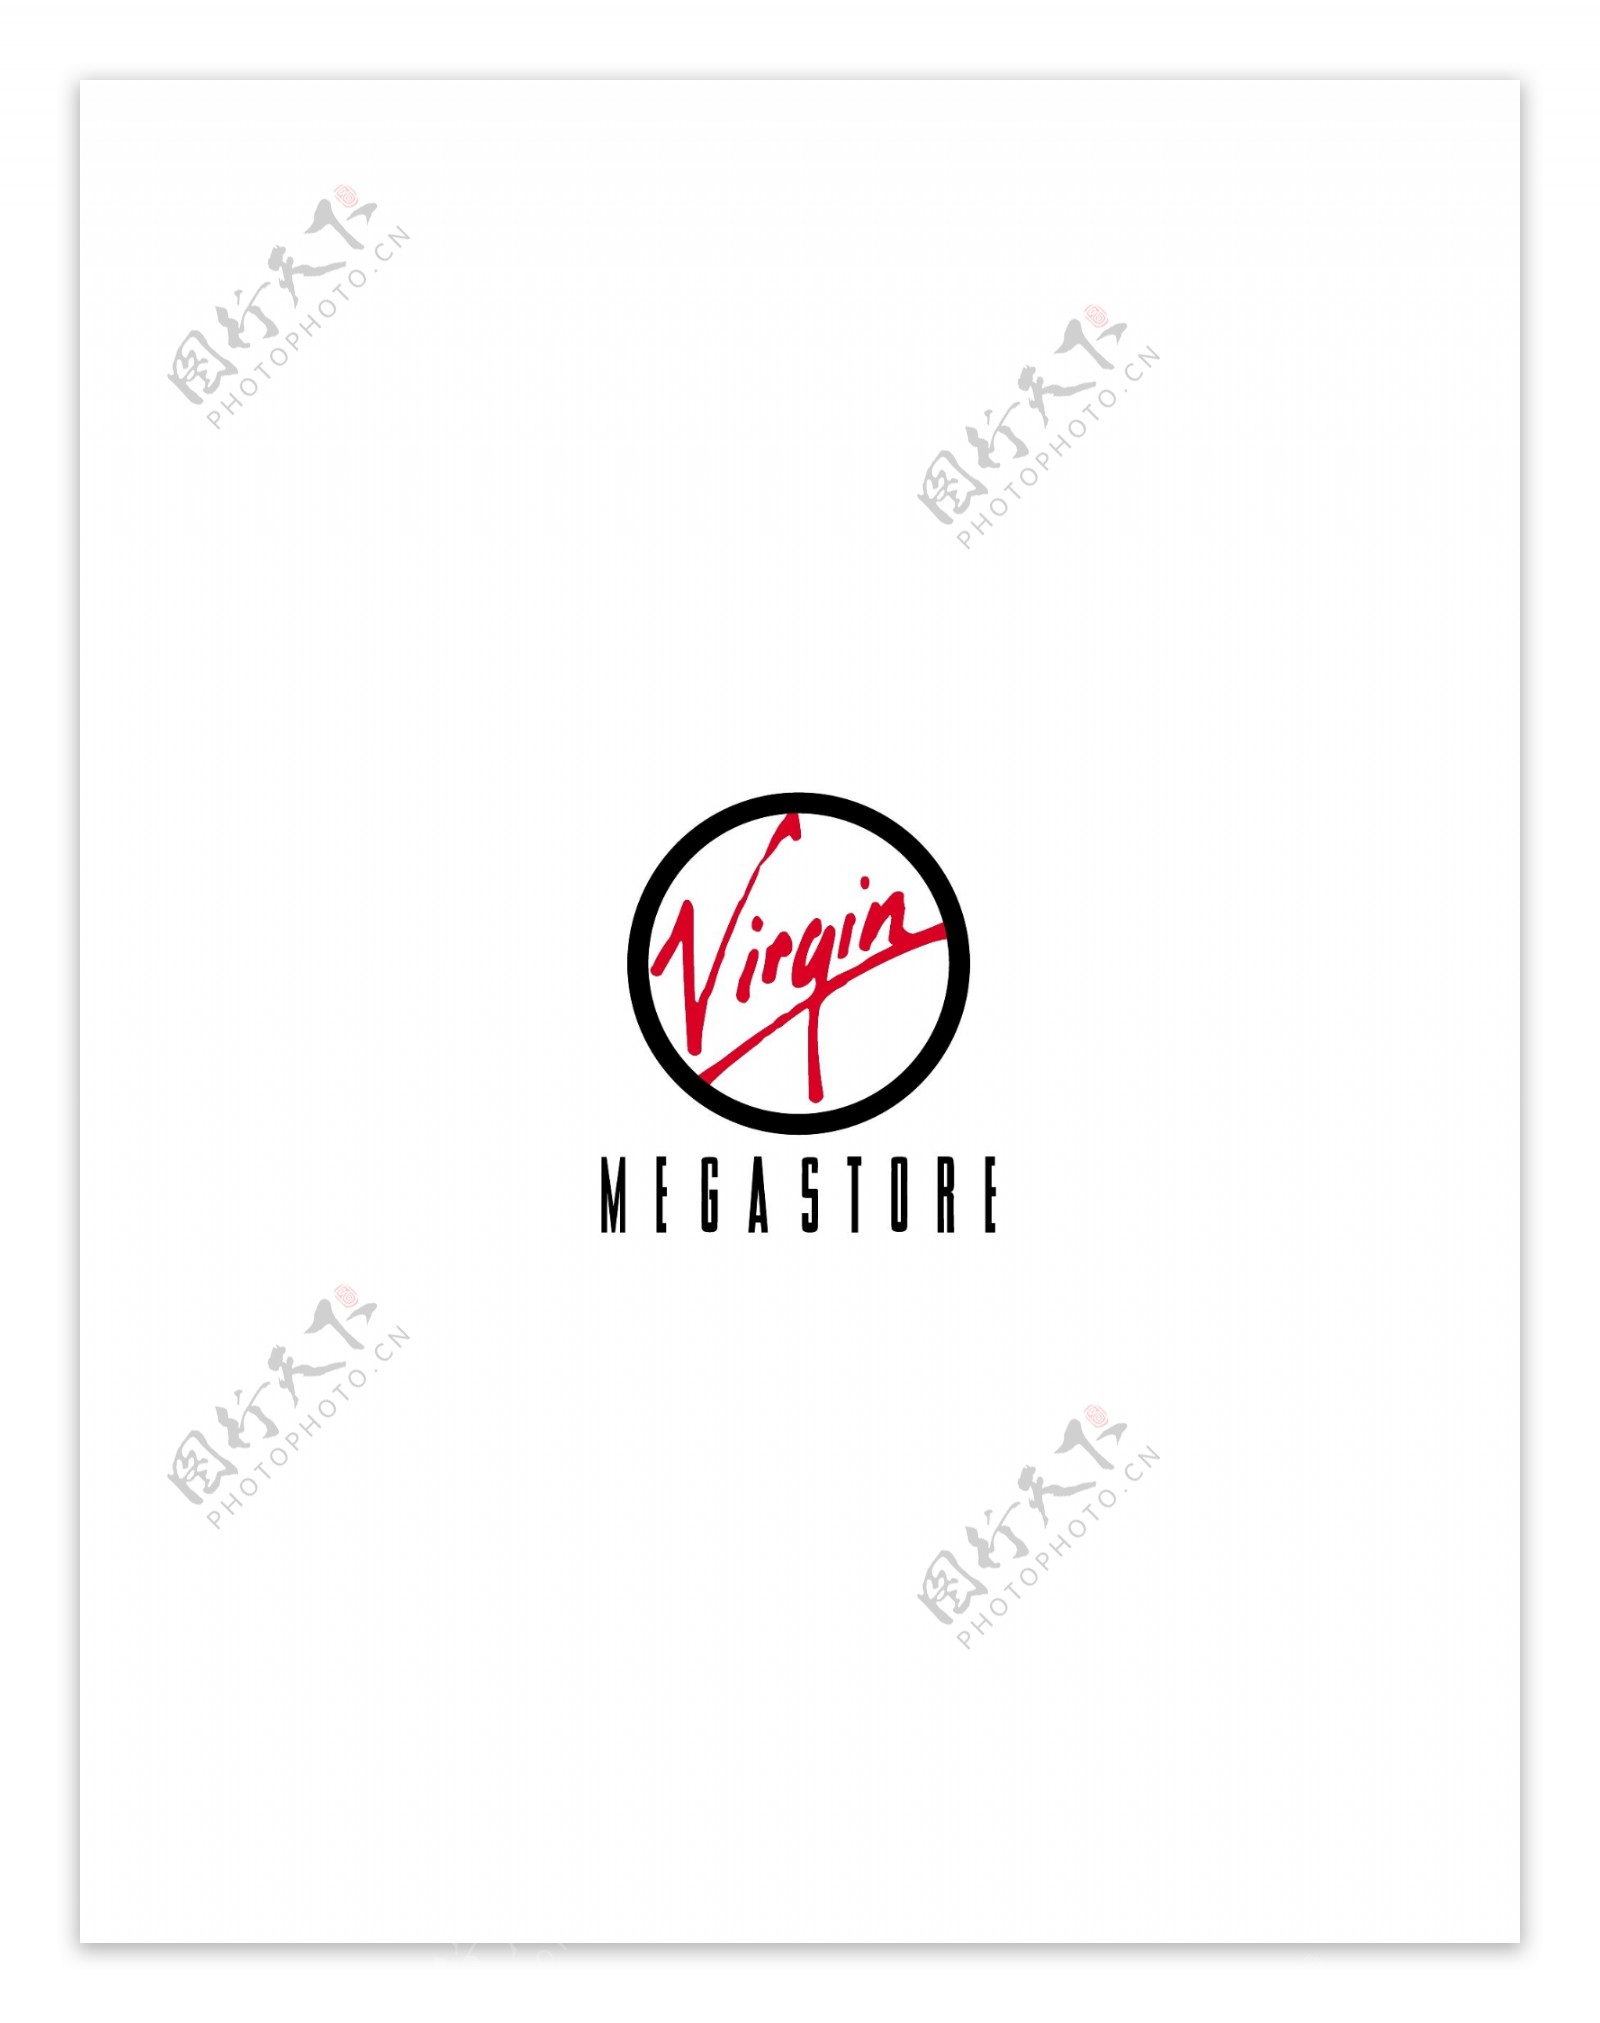 Virginlogo设计欣赏国外知名公司标志范例Virgin下载标志设计欣赏